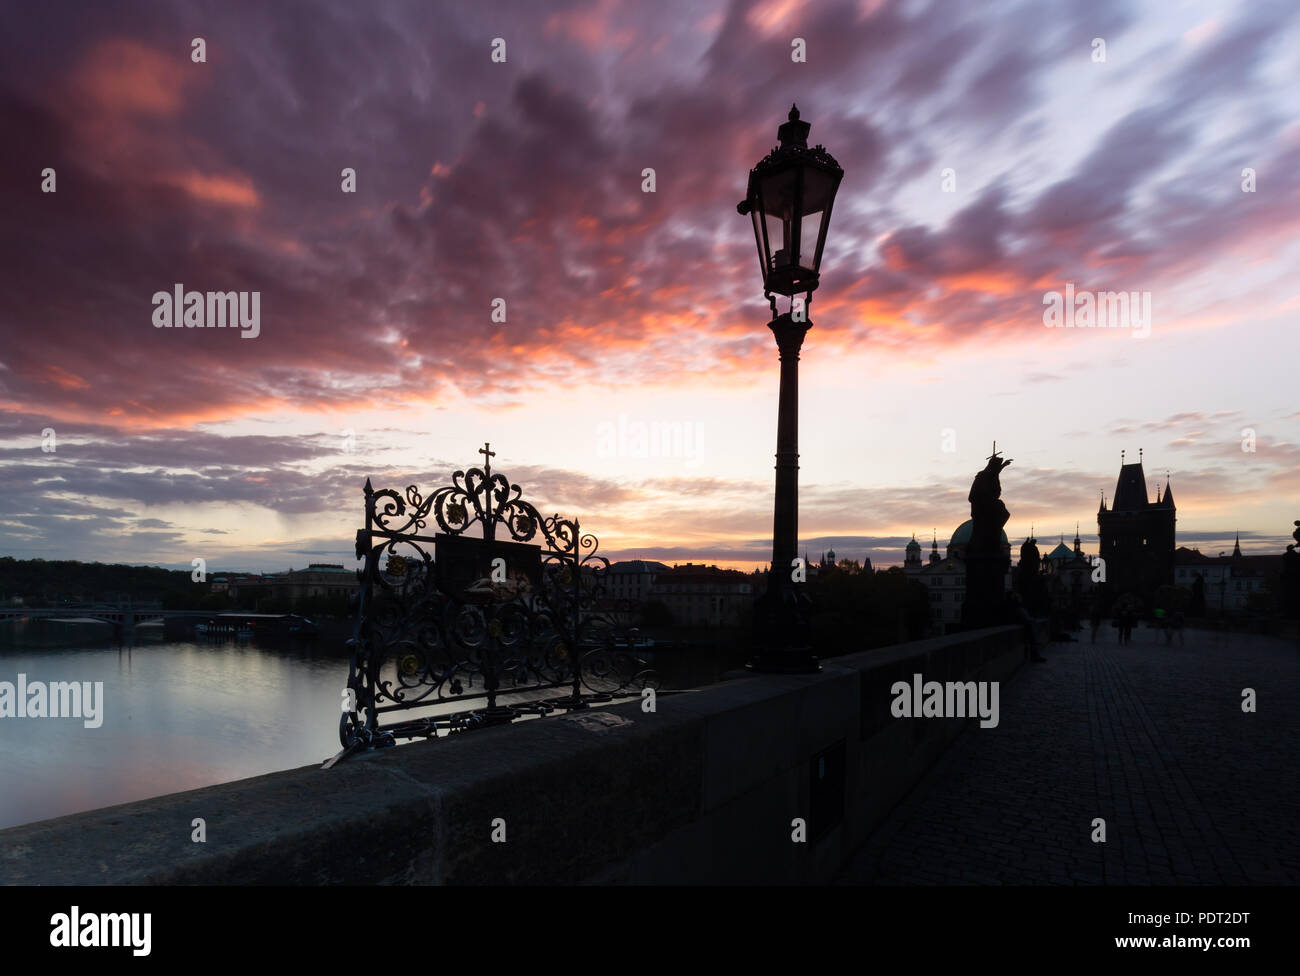 Famosa imagen icónica del puente Charles, Praga, República Checa. Foto de stock